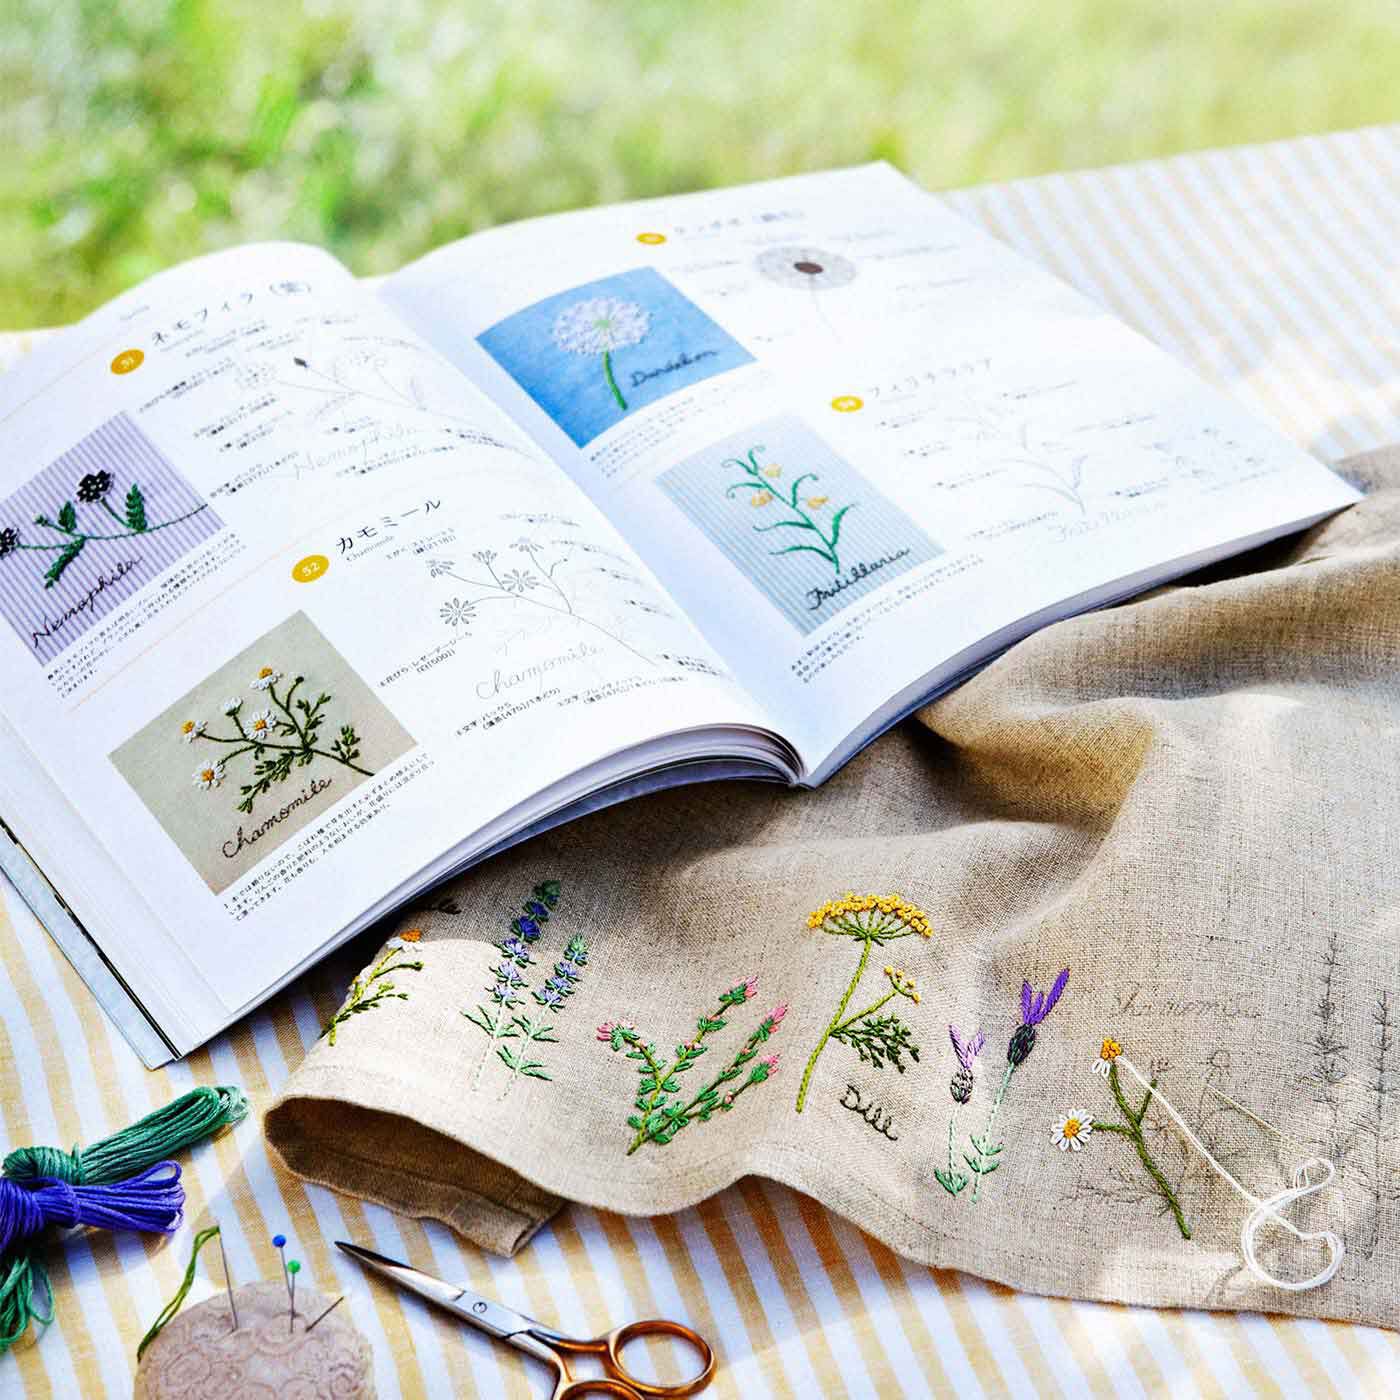 クチュリエ|季節のお花で暮らしに彩りを 187の刺繍デザイン 青木 和子さんのお庭から